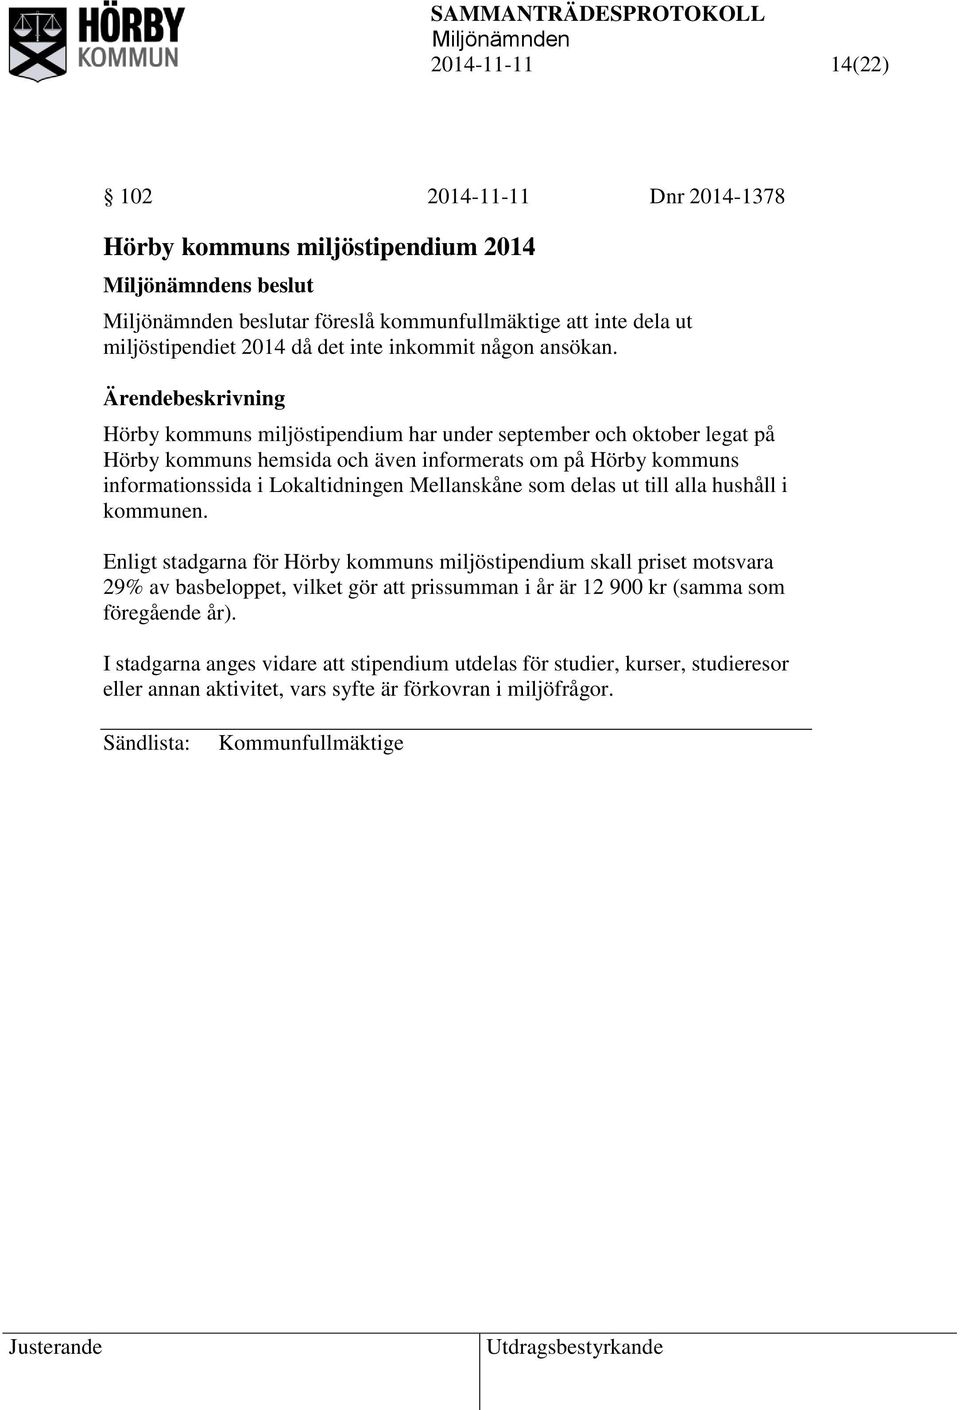 Hörby kommuns miljöstipendium har under september och oktober legat på Hörby kommuns hemsida och även informerats om på Hörby kommuns informationssida i Lokaltidningen Mellanskåne som delas